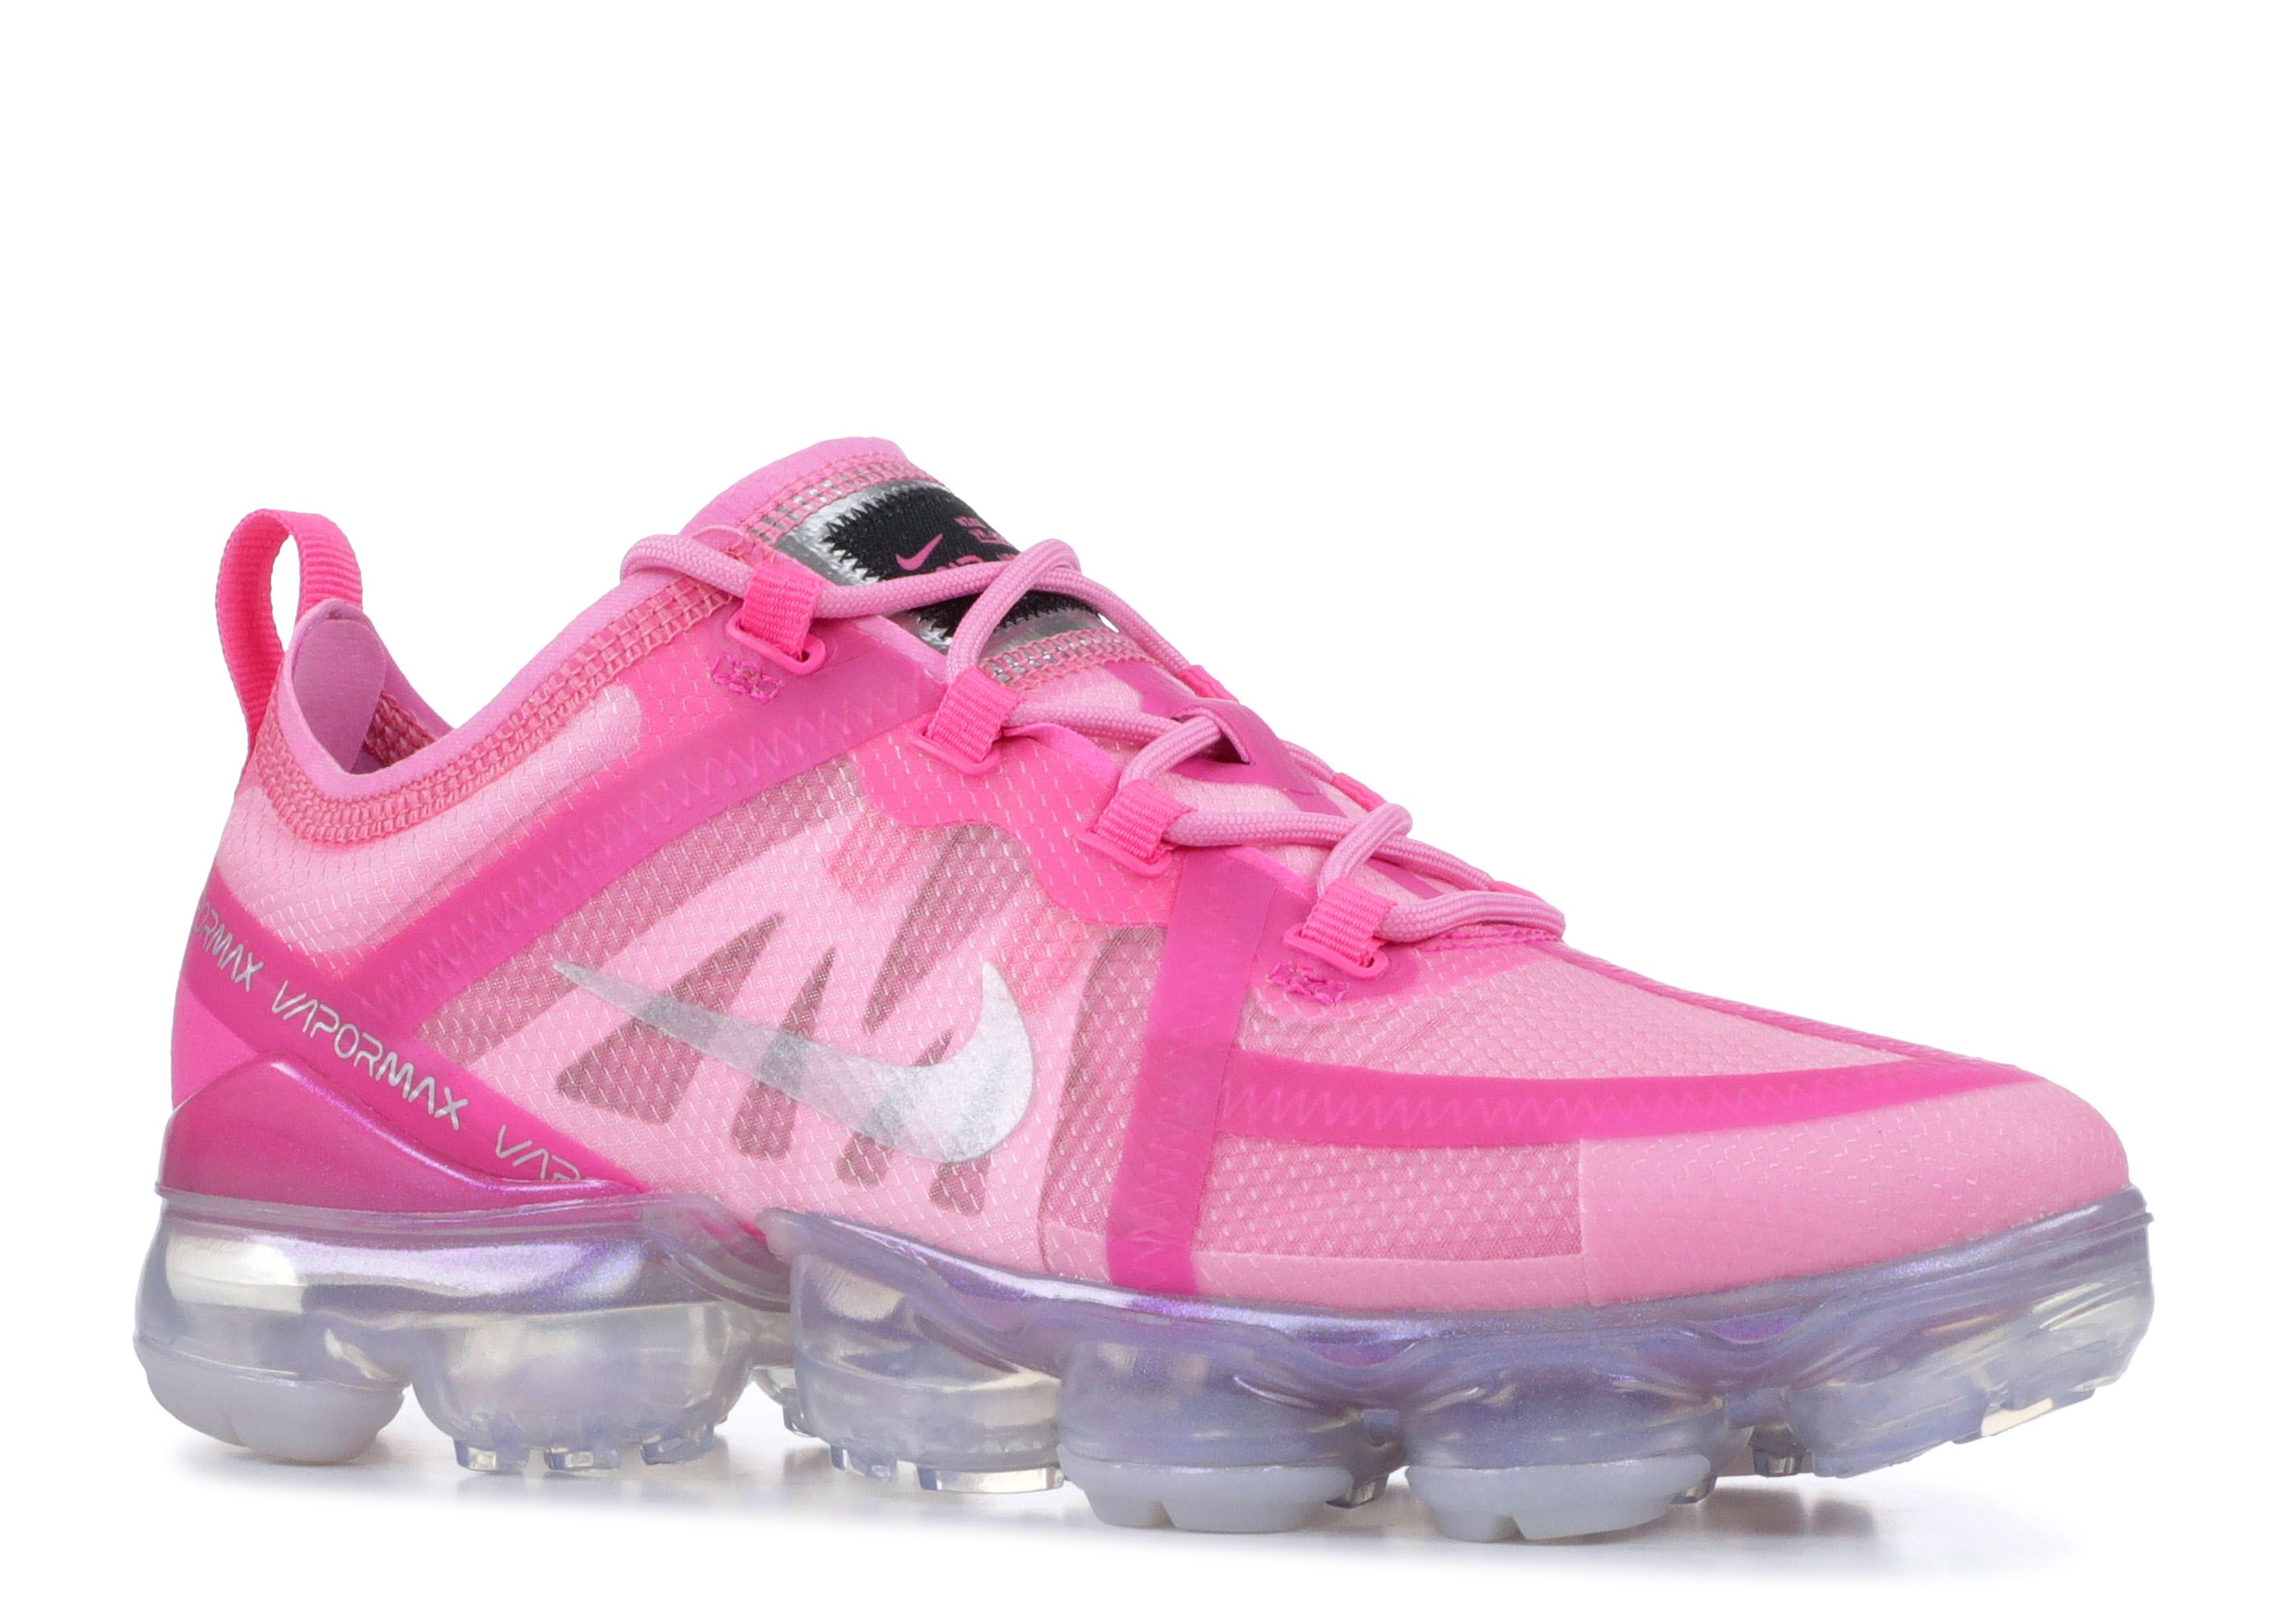 nike air vapormax 2019 psychic pink women's shoe